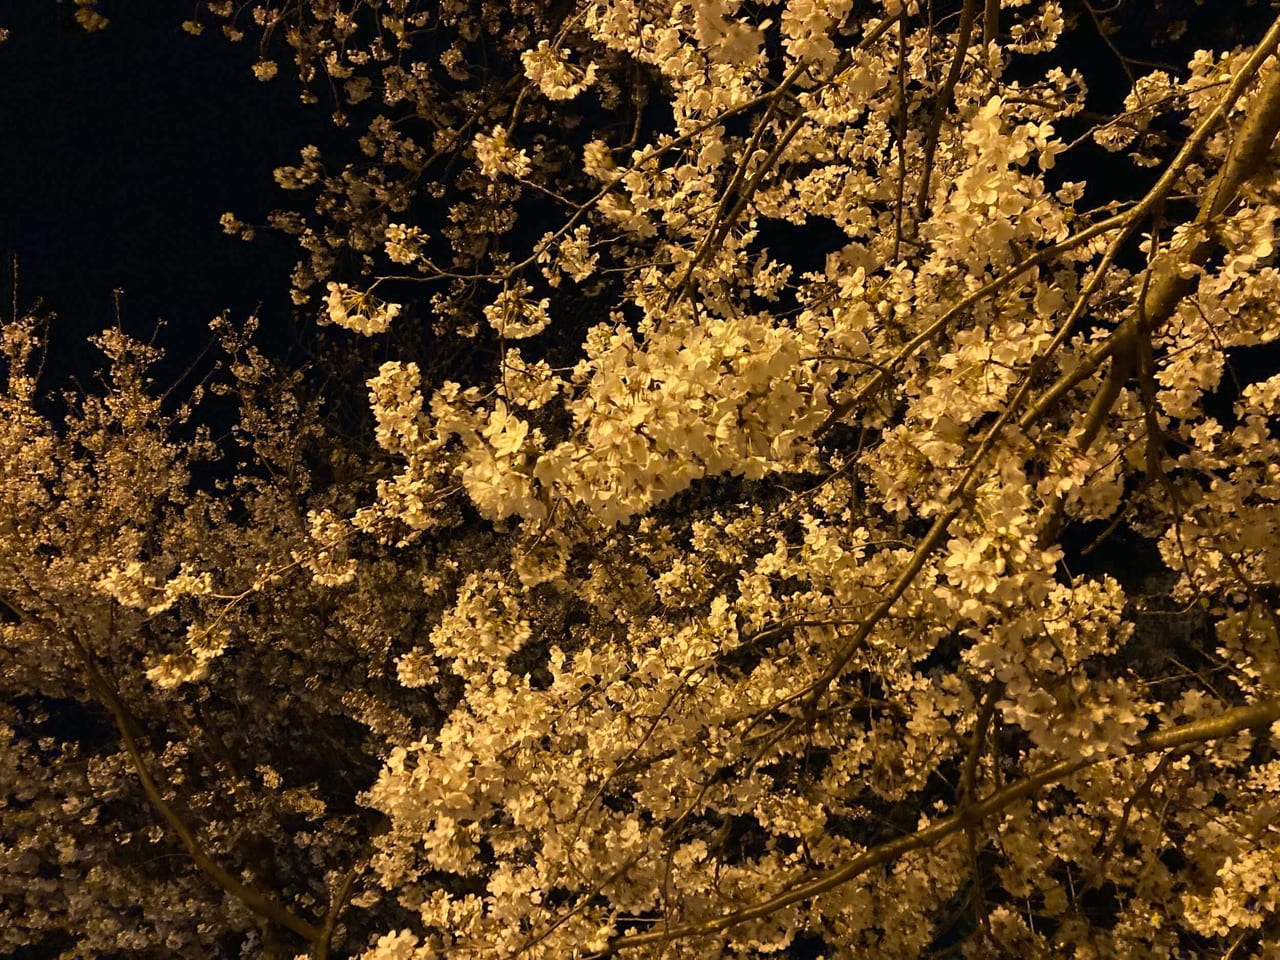 久松公園の桜